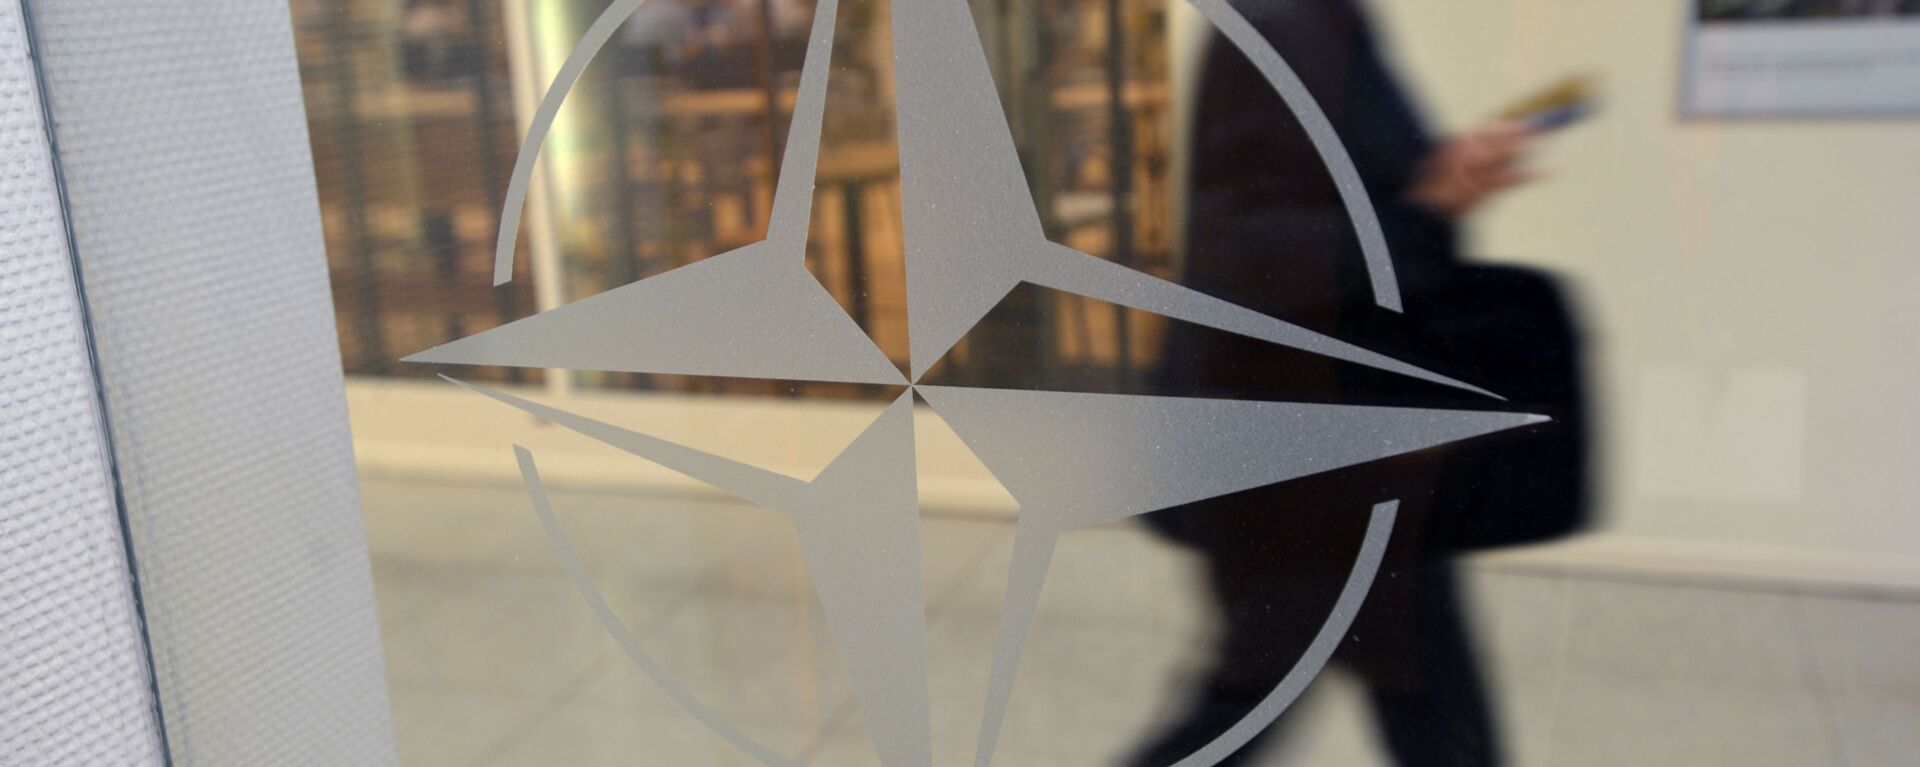 Biểu tượng của tổ chức tại Trụ sở NATO ở Brussels, Bỉ - Sputnik Việt Nam, 1920, 07.06.2022